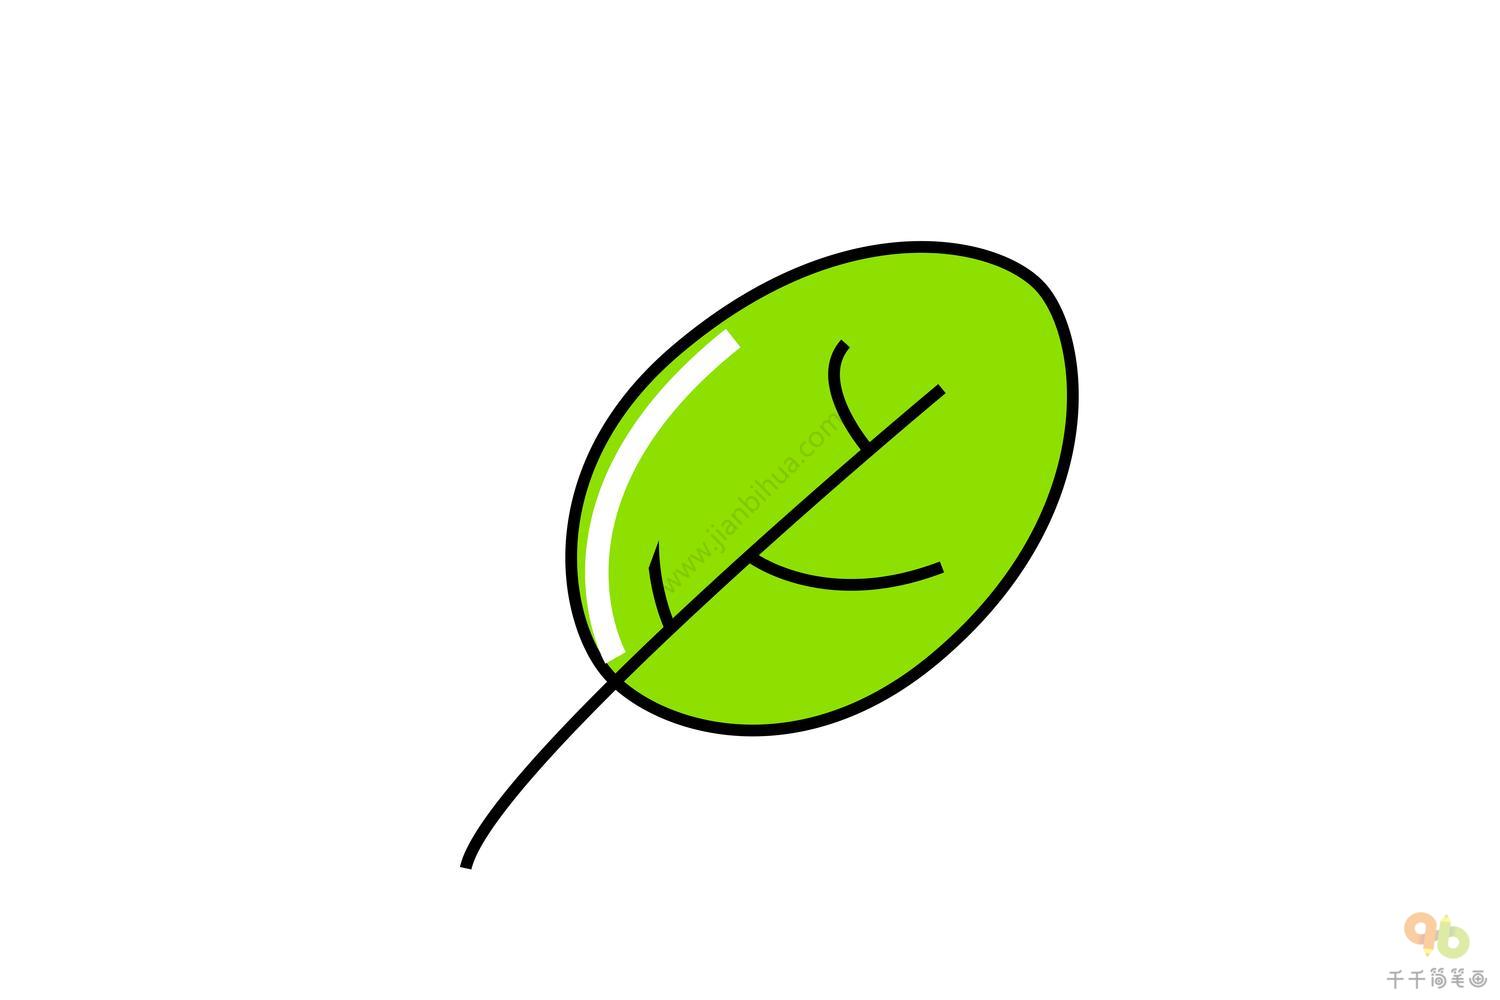 嫩绿的叶子简笔画步骤图_绿色植物